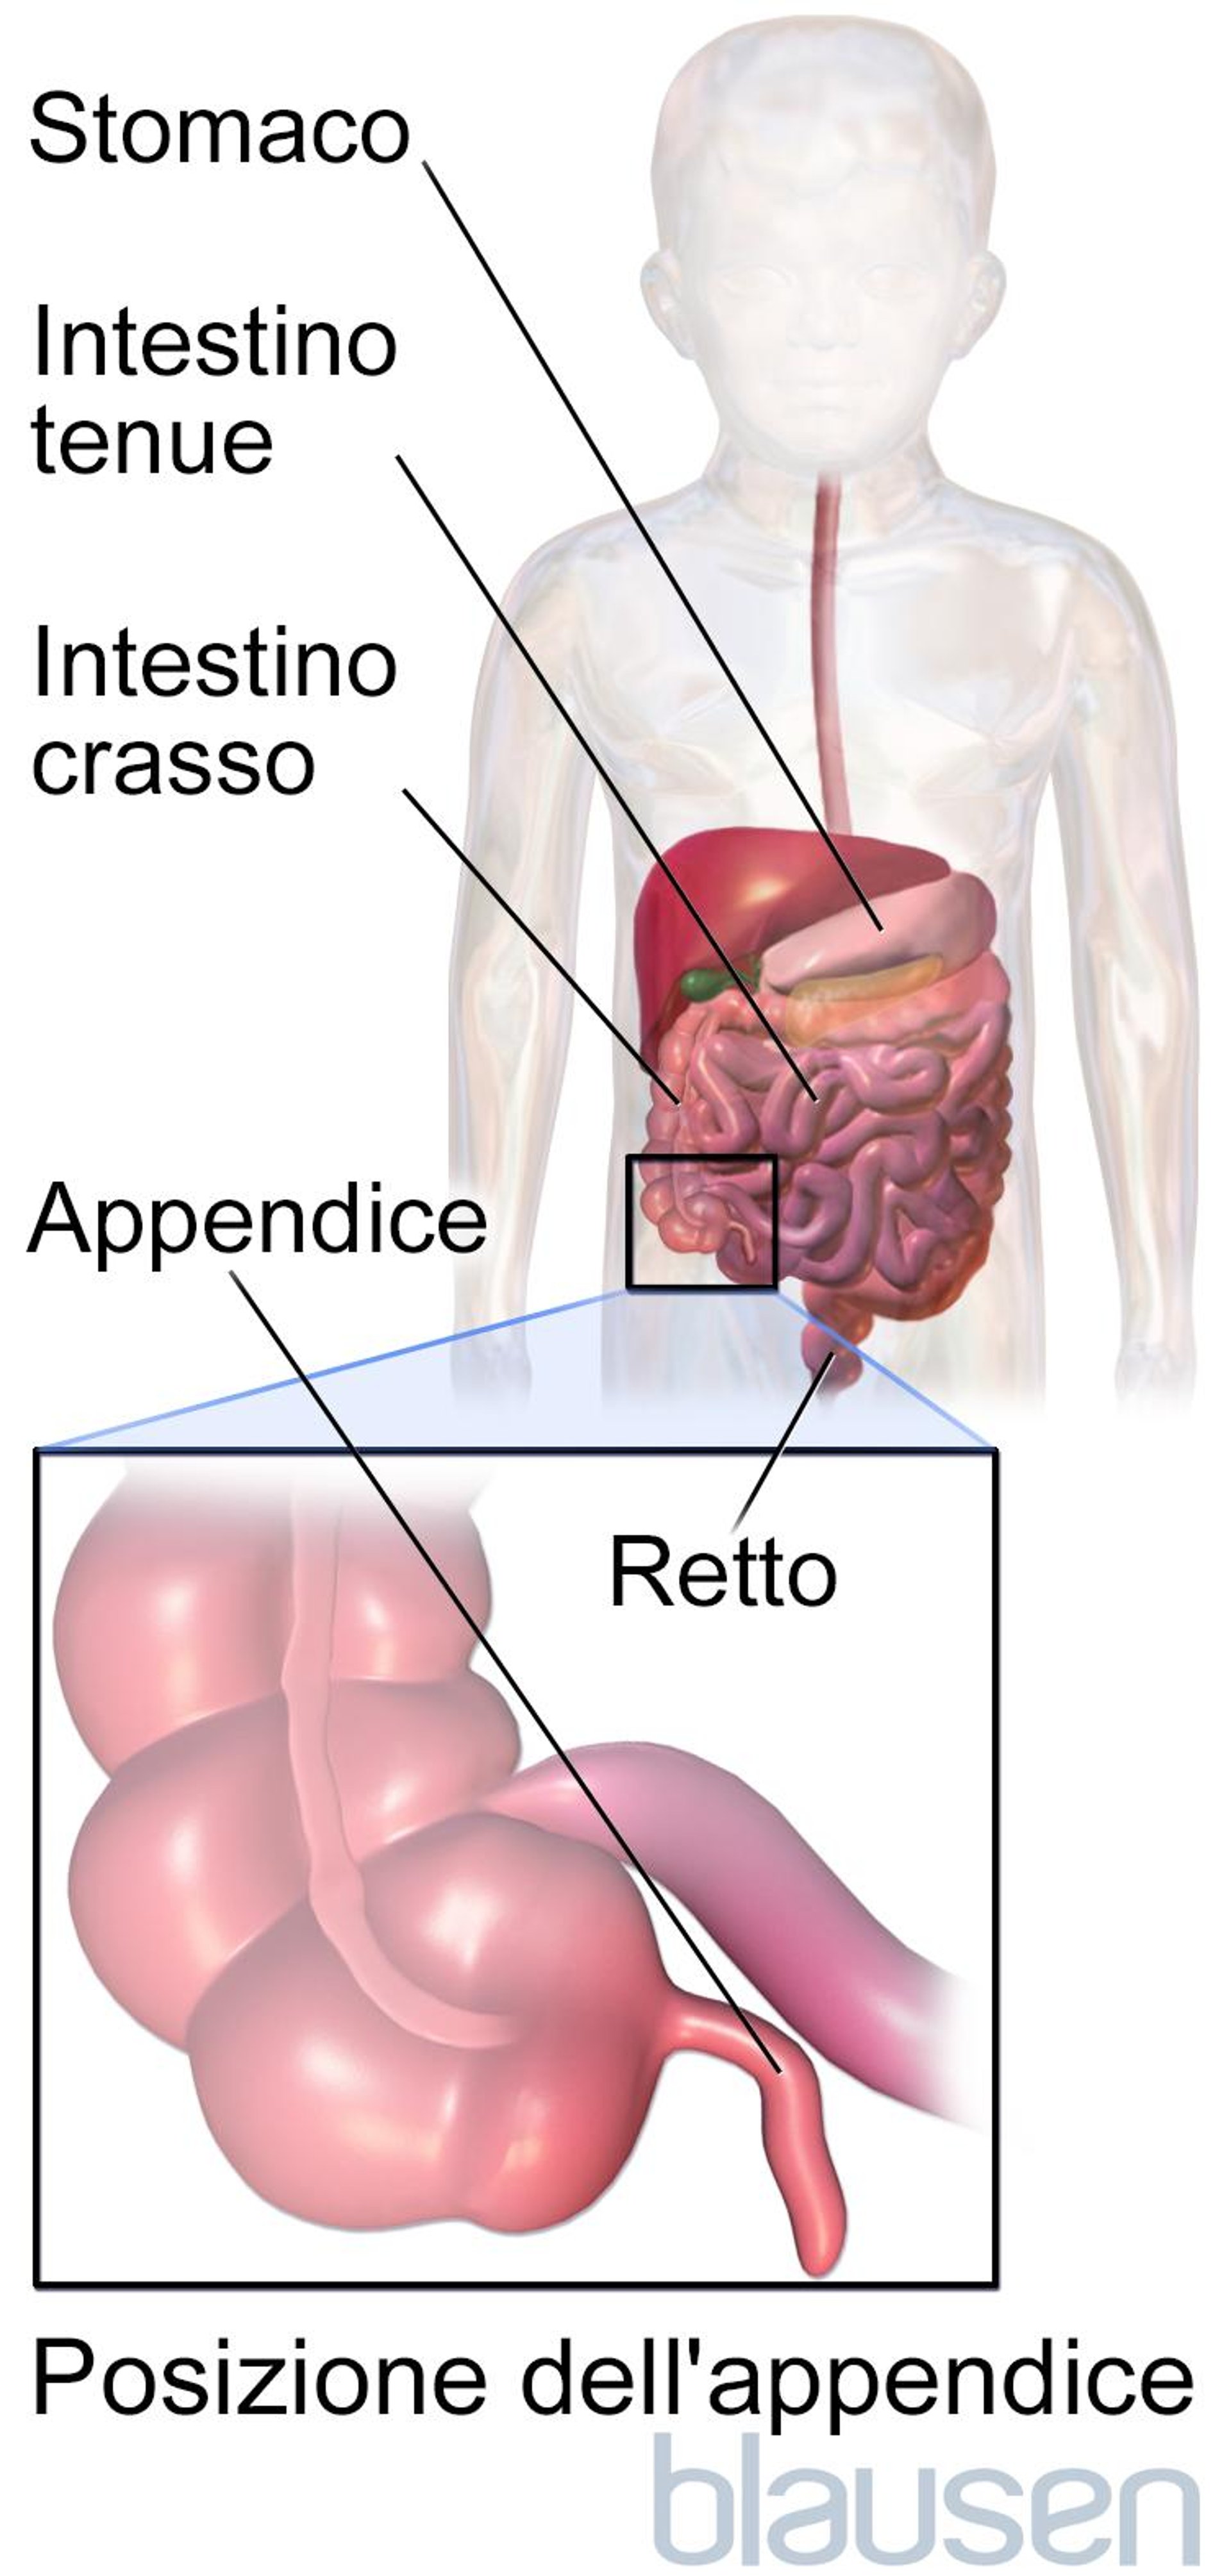 Posizione dell’appendice